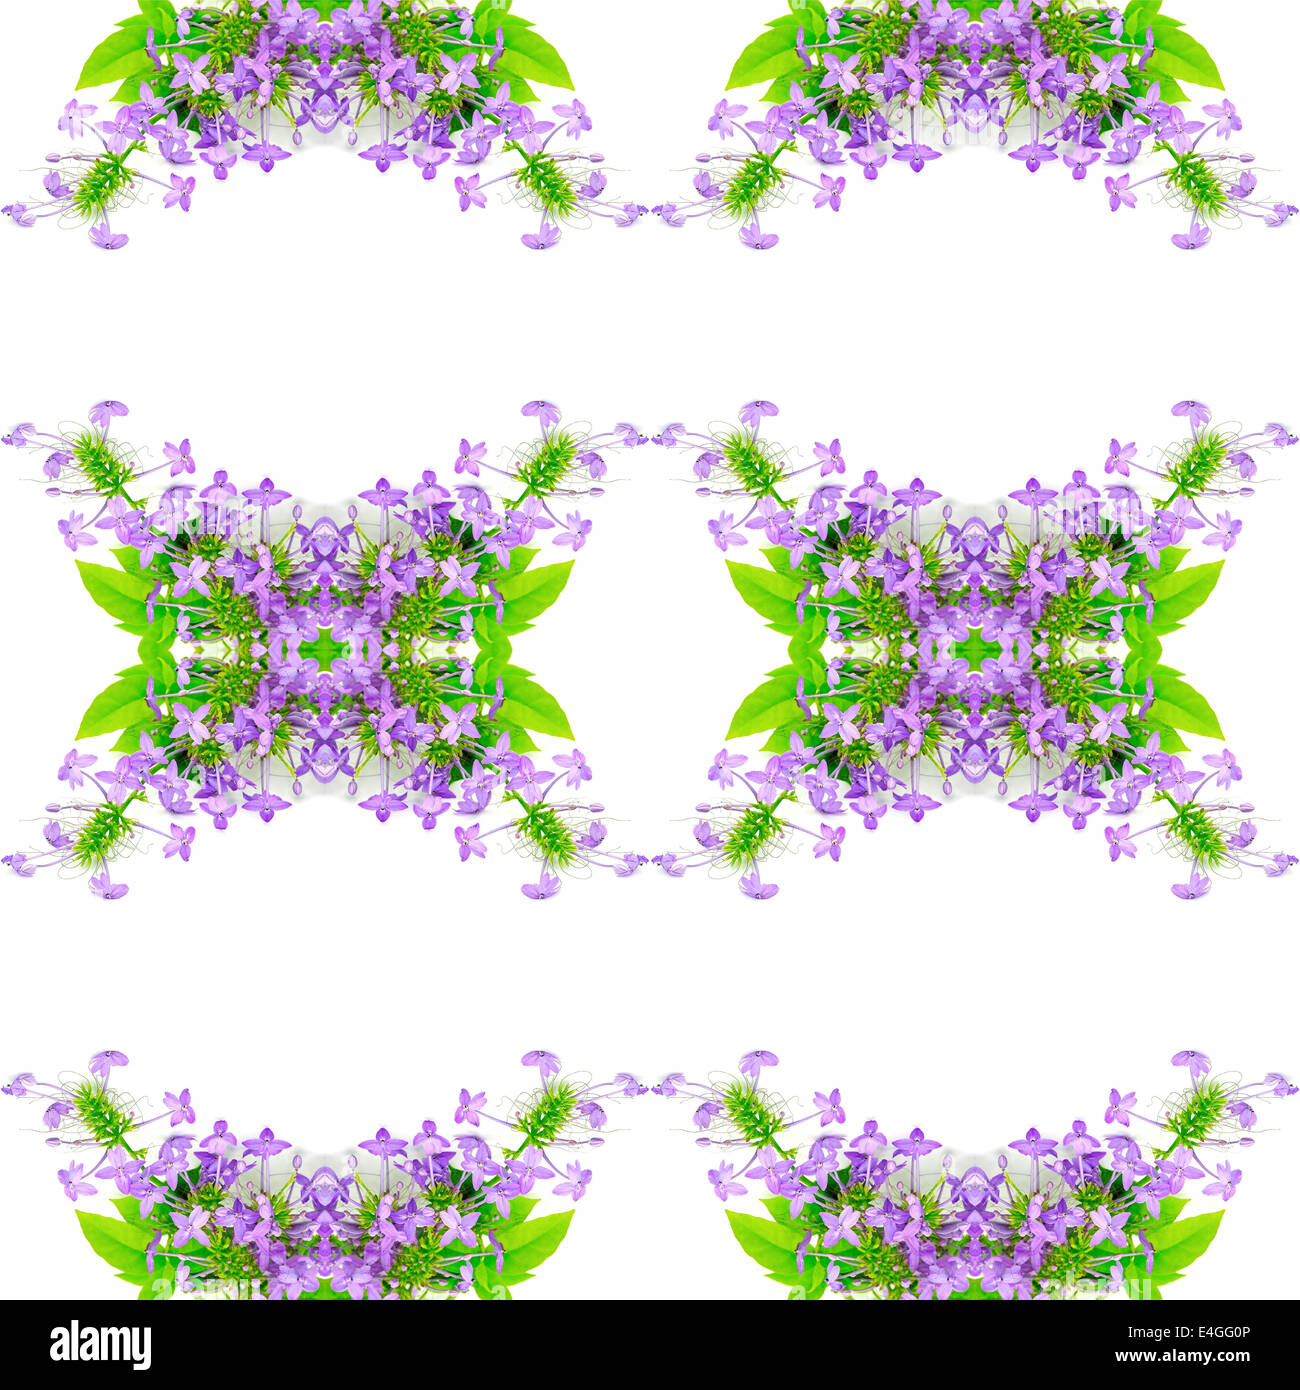 Belle fleur pourpre, violet Ixora (Pseuderanthemum andersonii), isolé sur fond blanc Banque D'Images